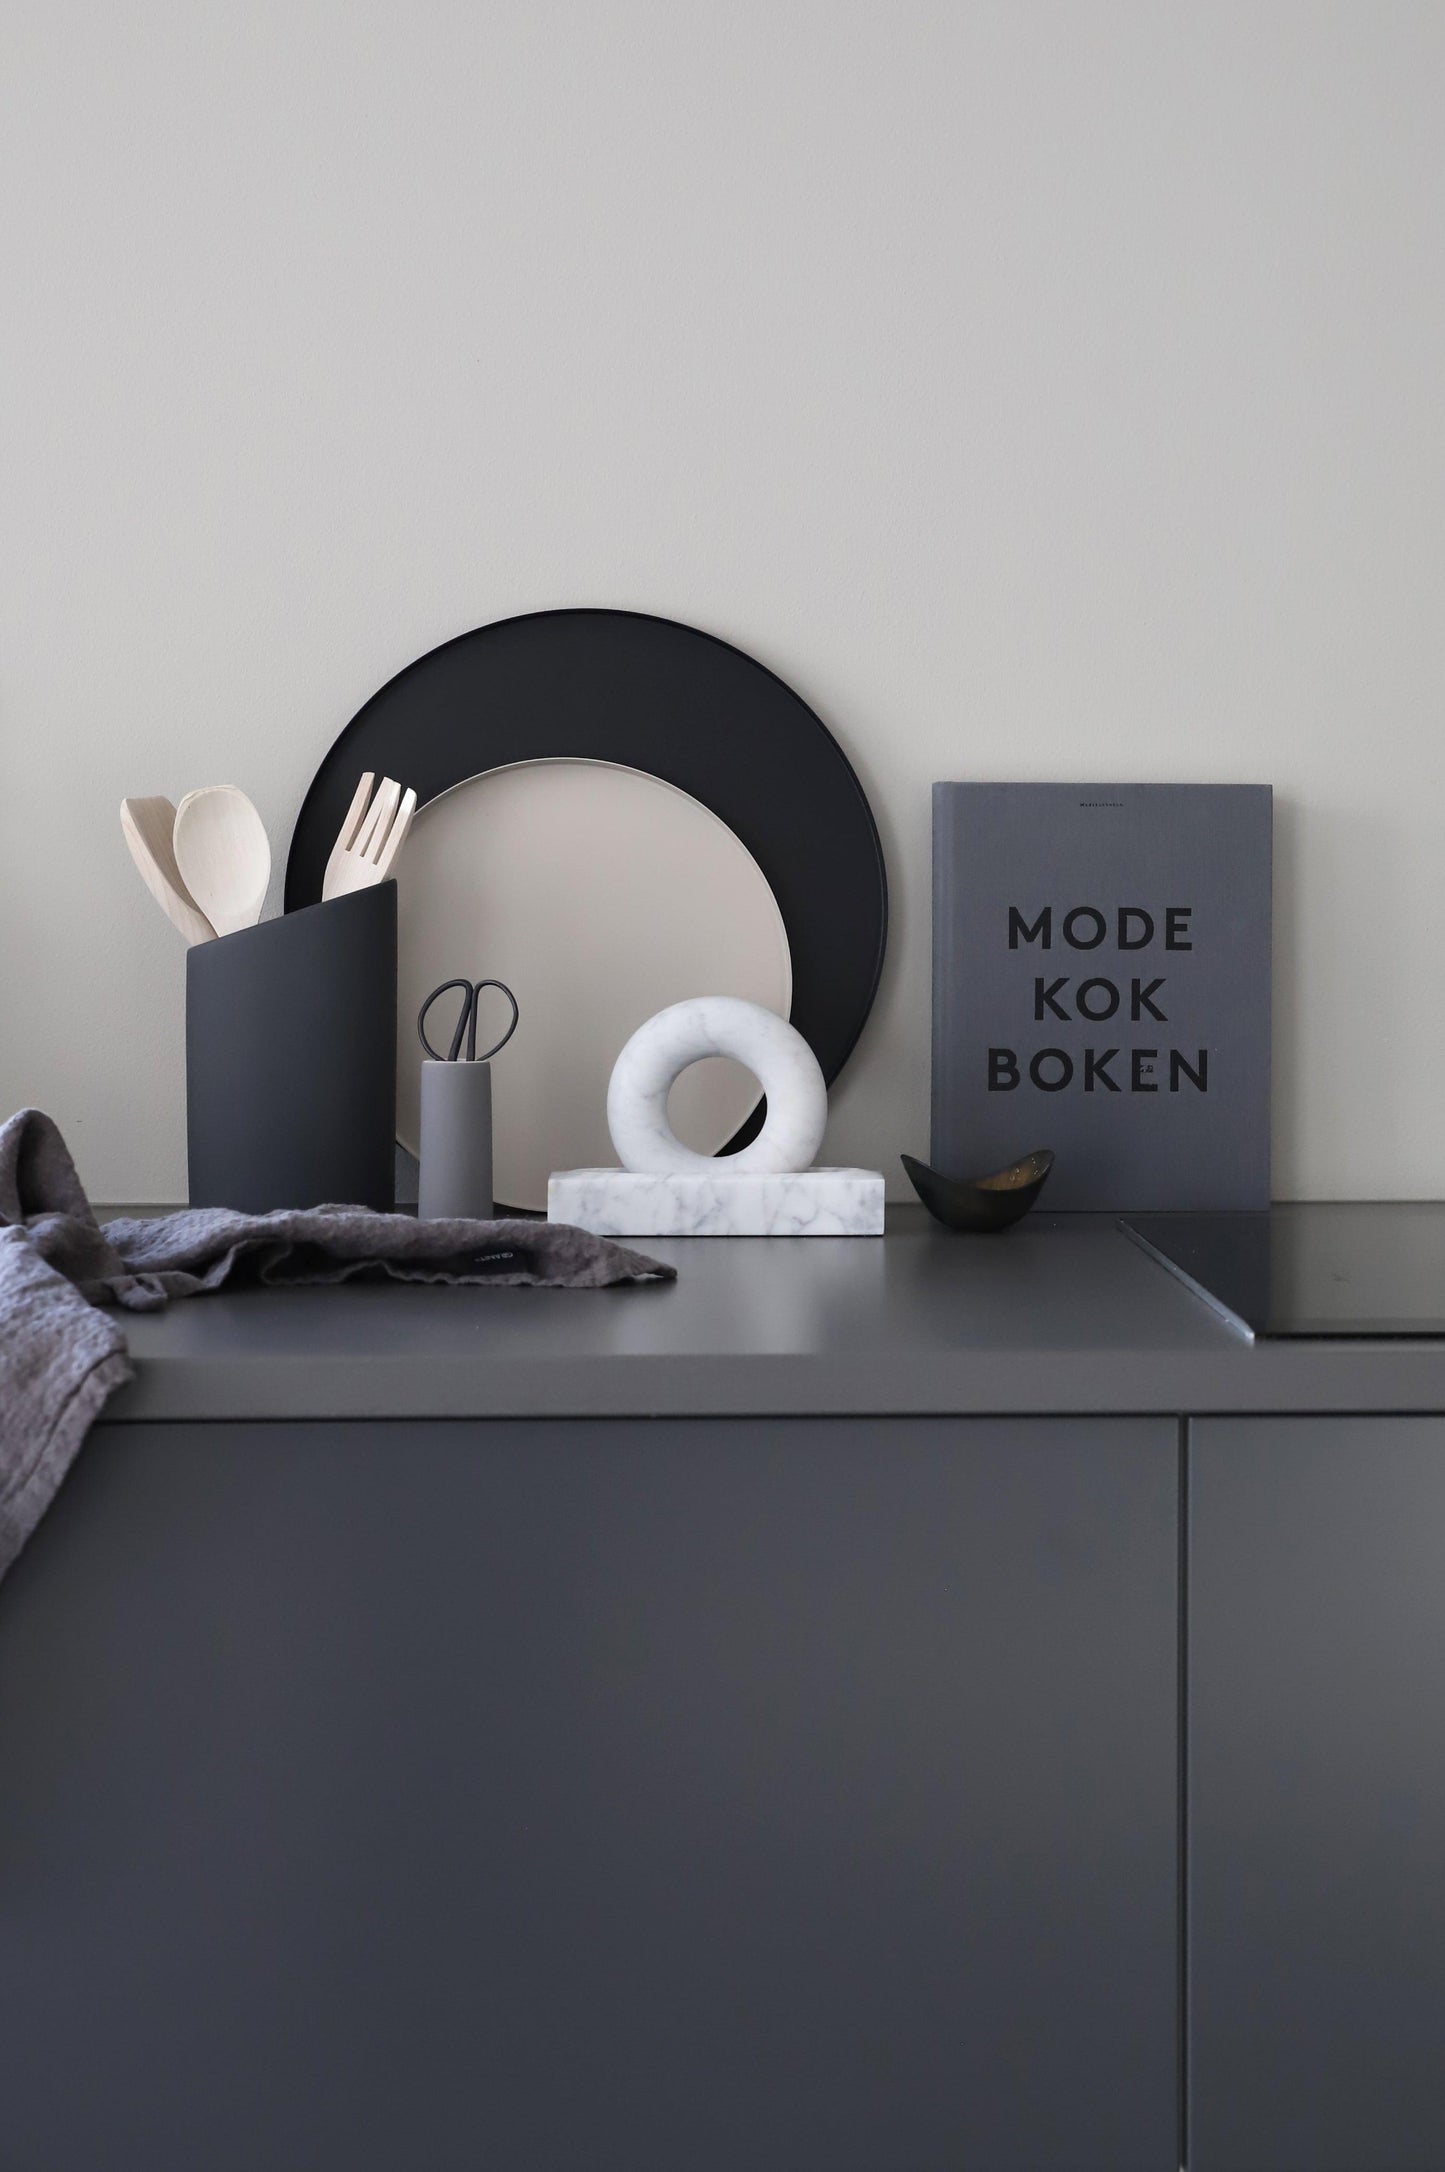 DIMM: Cooee Design kringlóttur bakki · black · margar stærðir